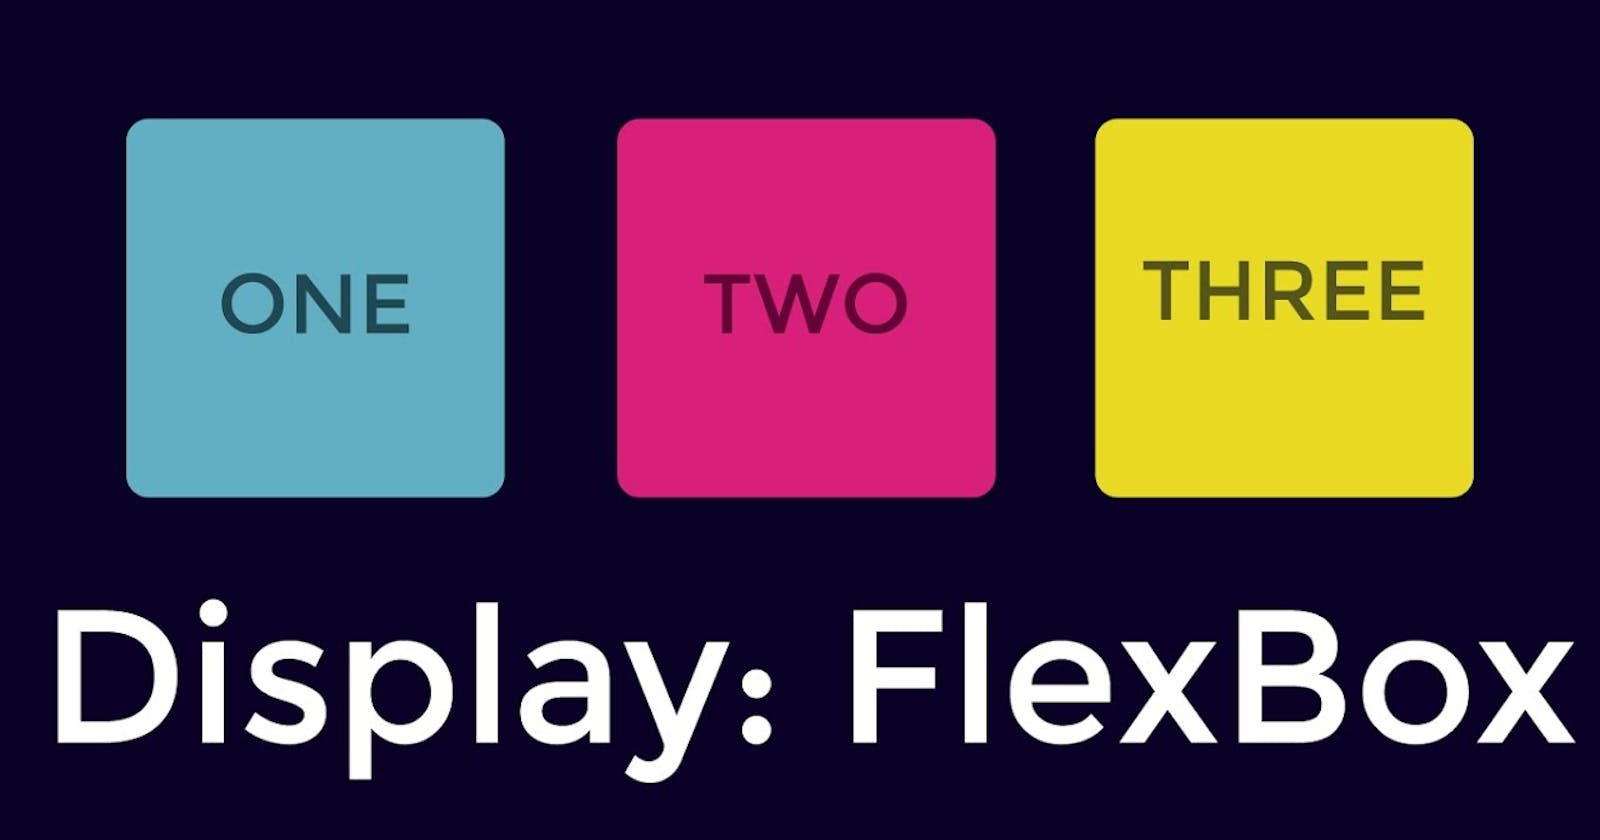 Flexbox design patterns